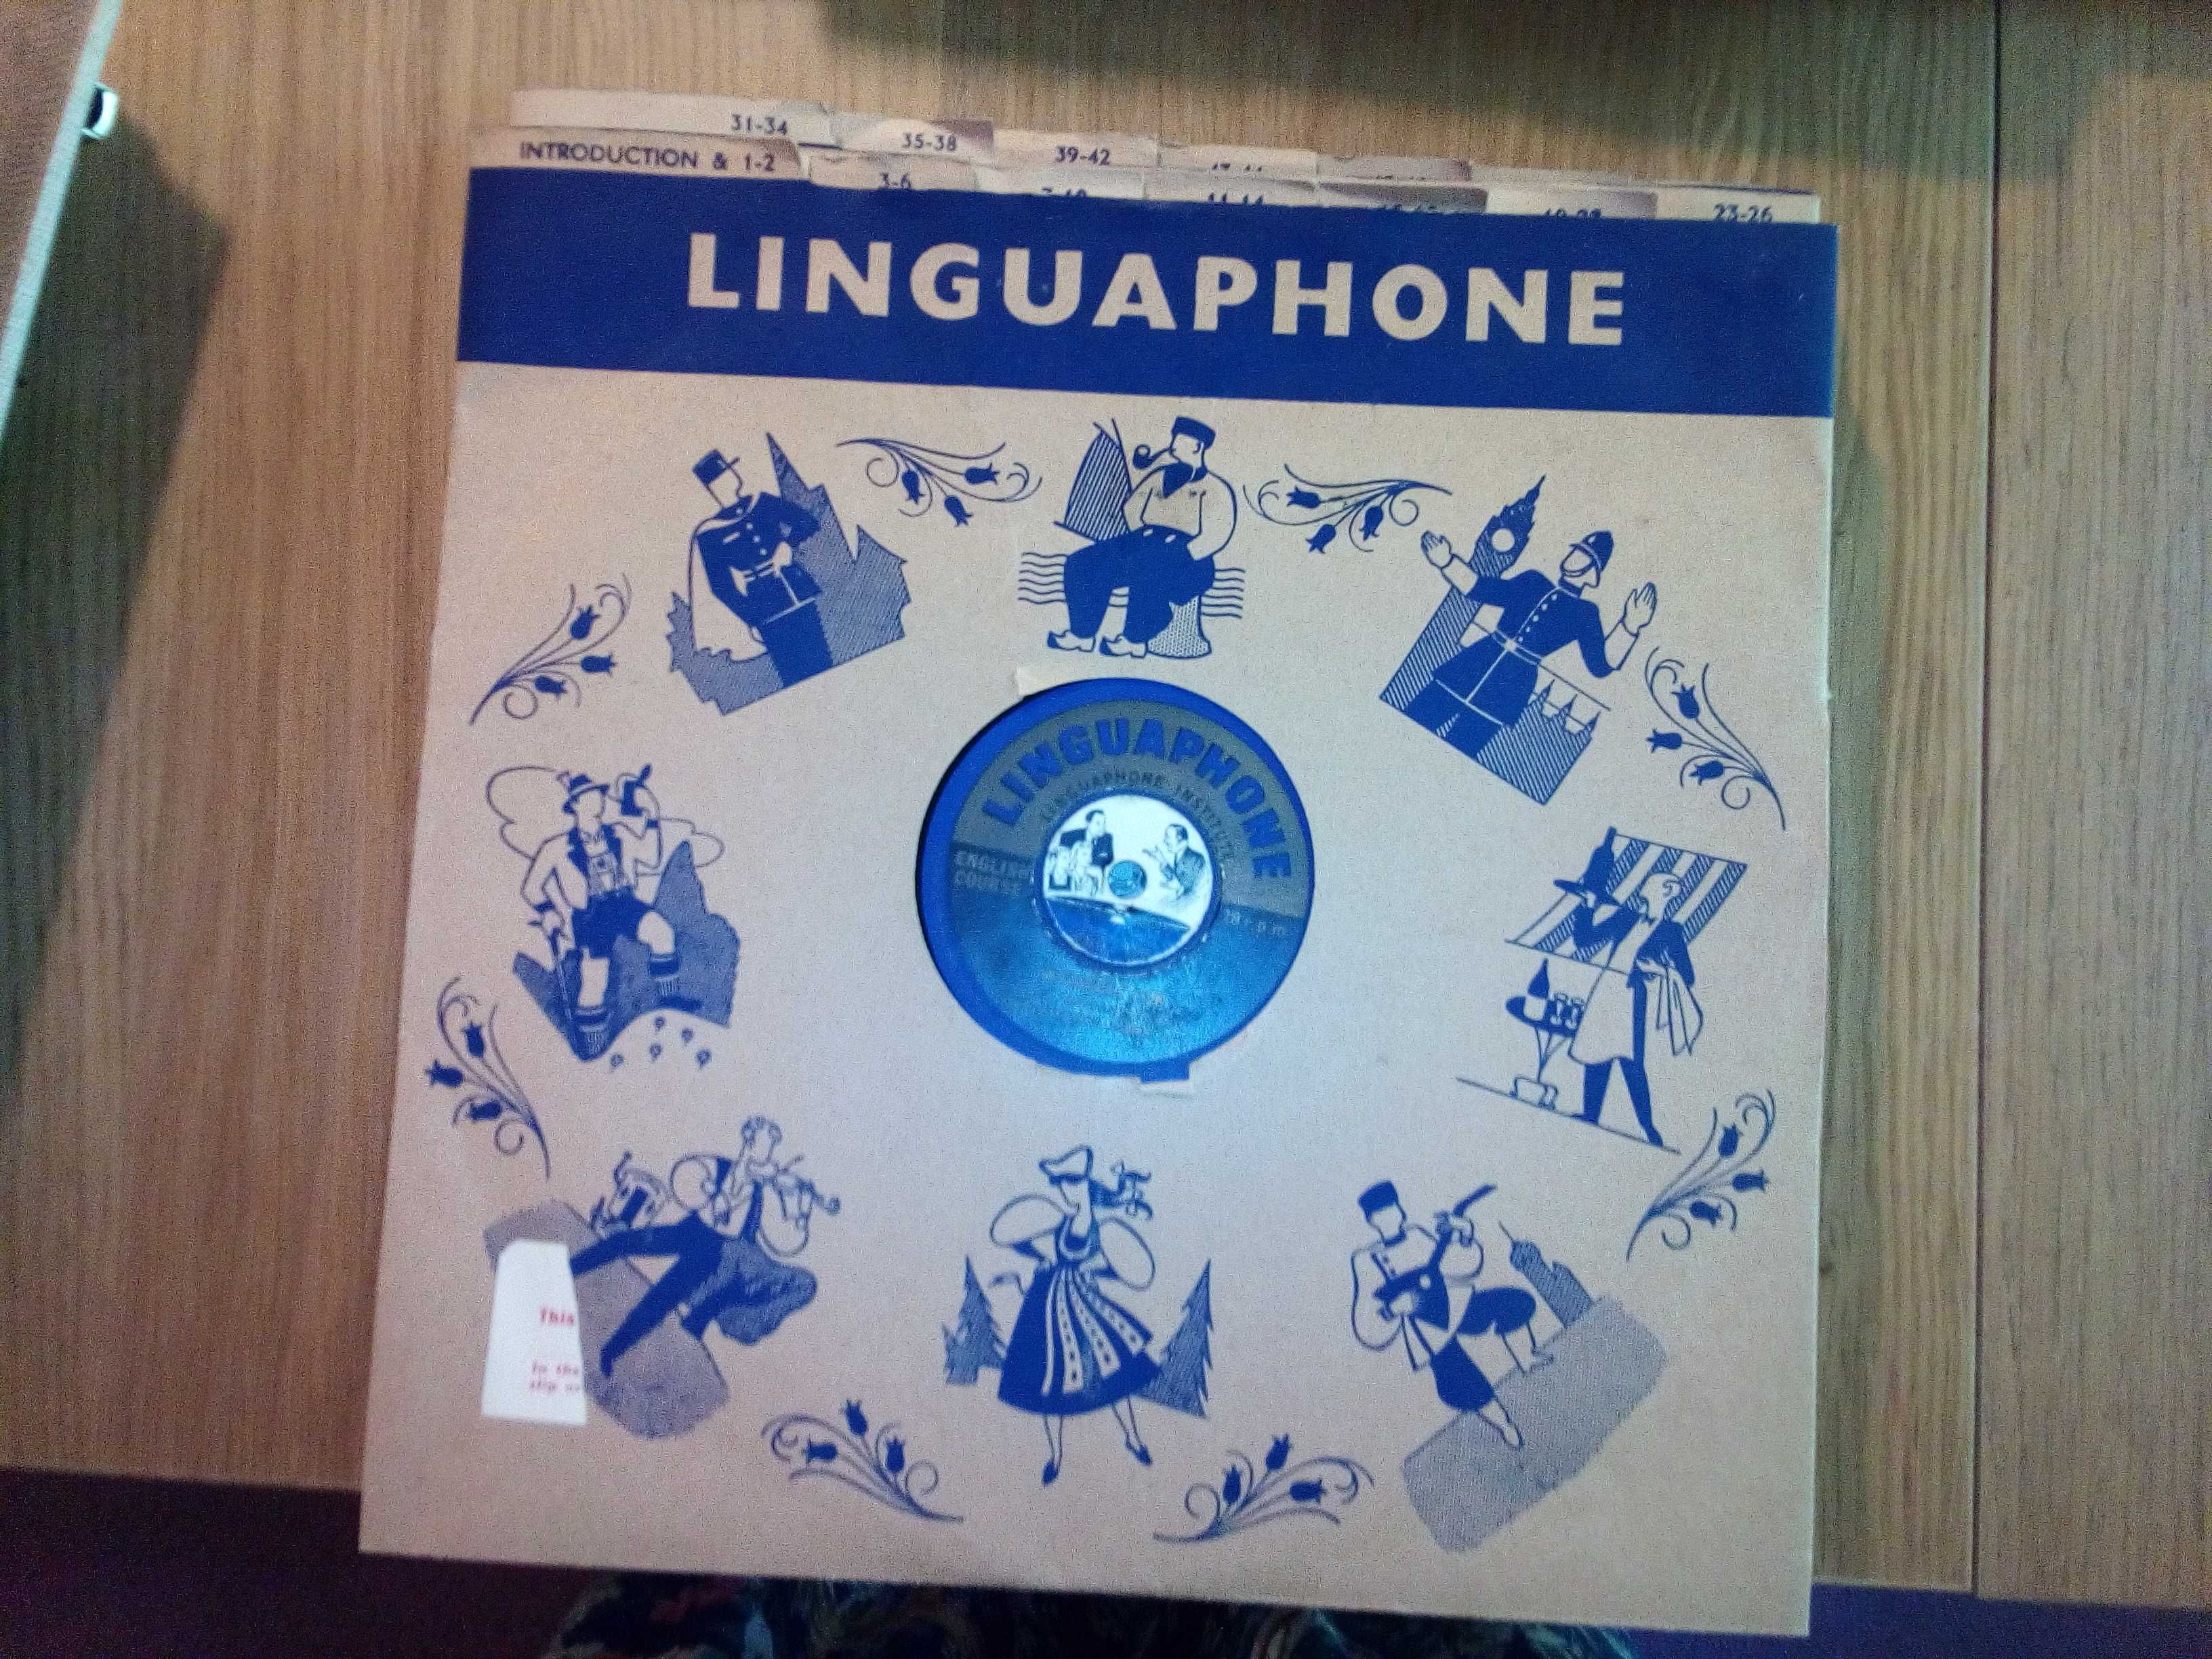 Linguaphone Curso de Inglês em discos de Vinil com mala